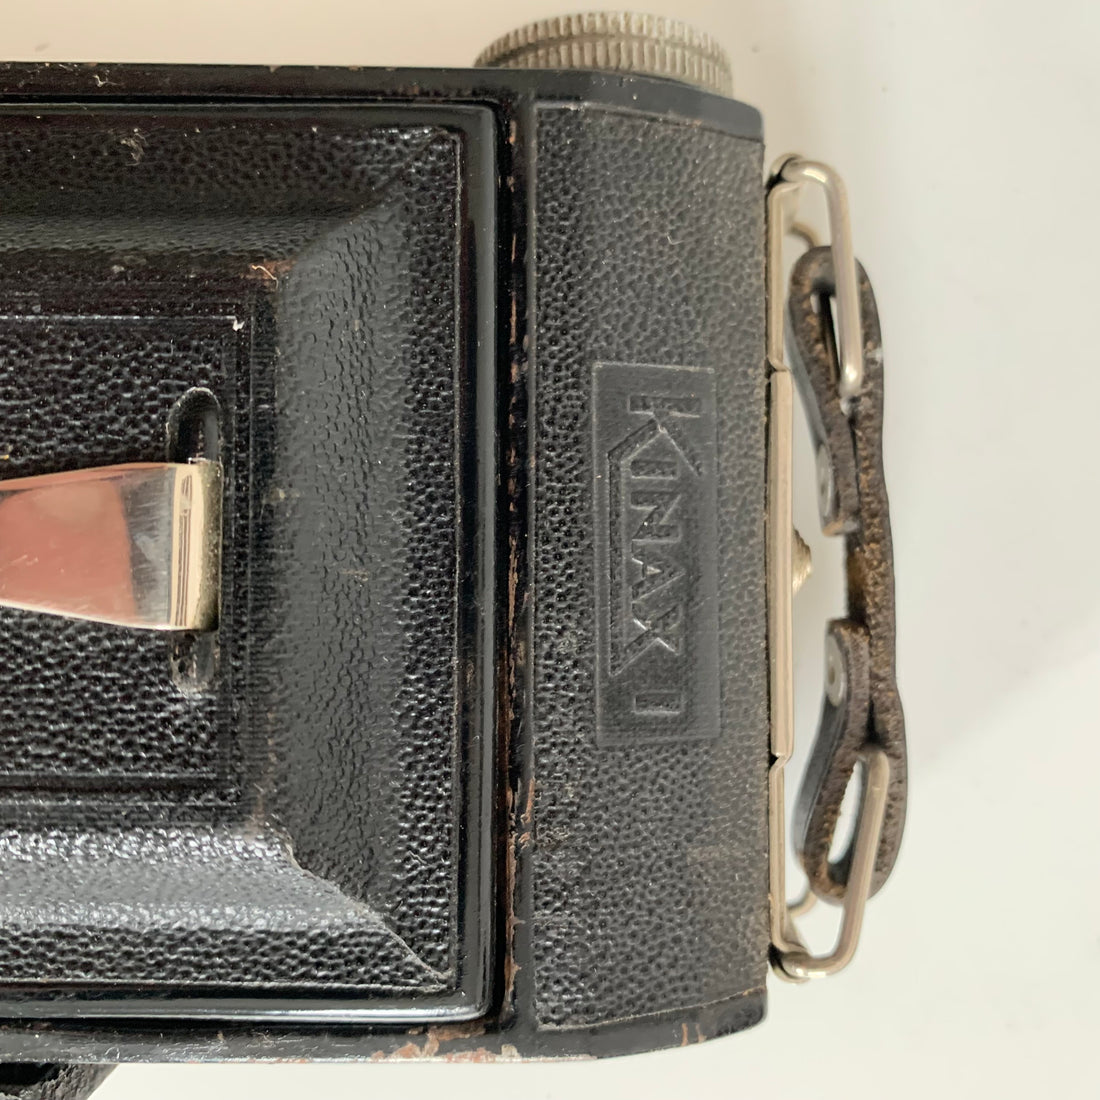 Ancien appareil photo Kinax